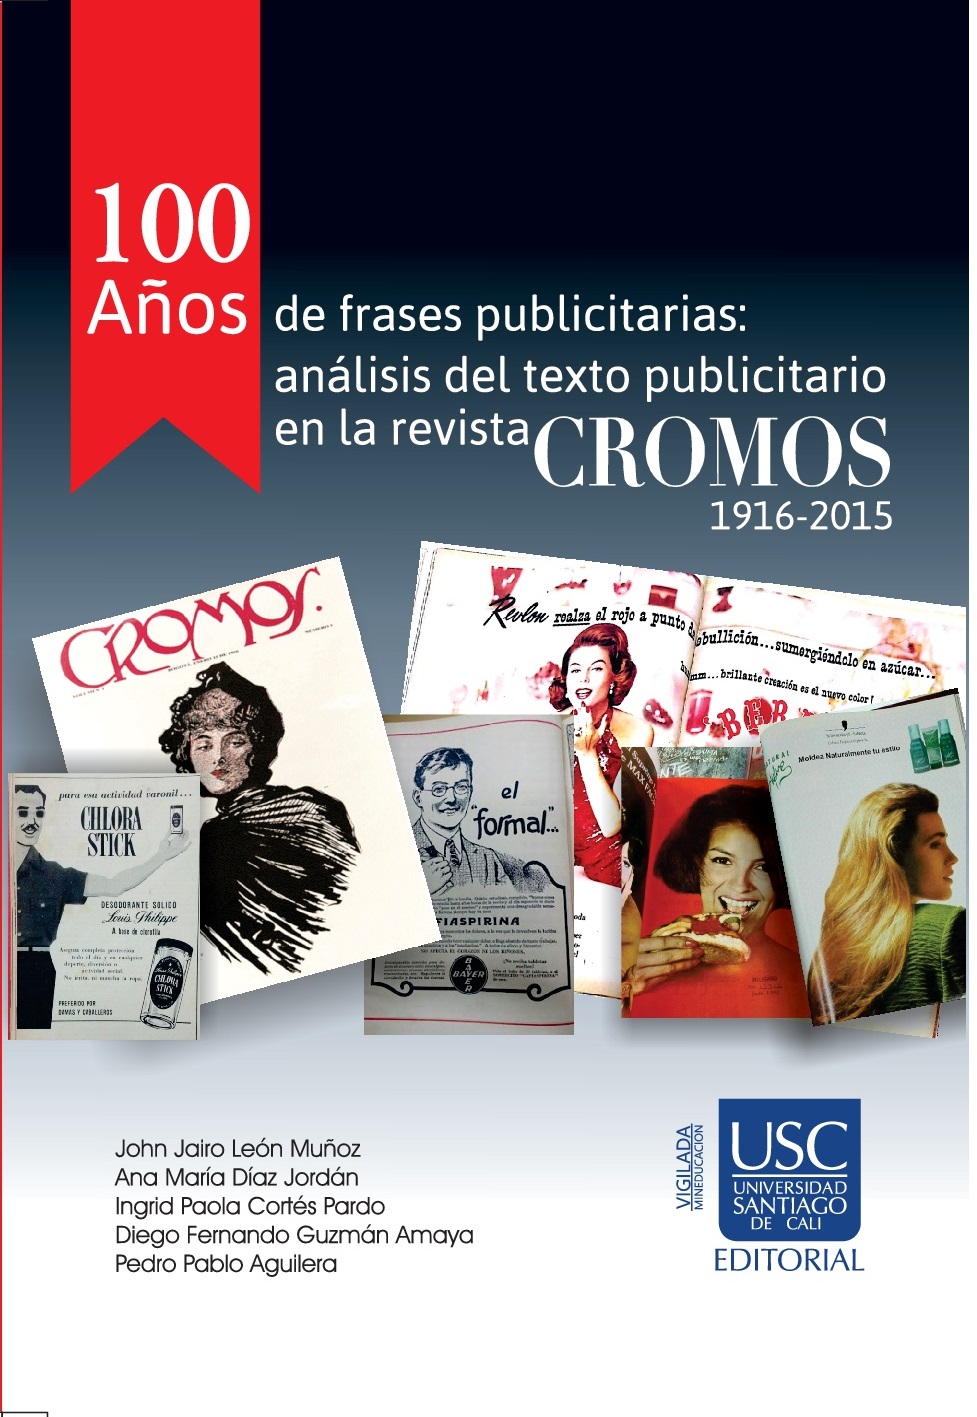 100 años de frases publicitarias: Análisis del texto publicitario en la  revista Cromos 1916-2015 - Dialnet